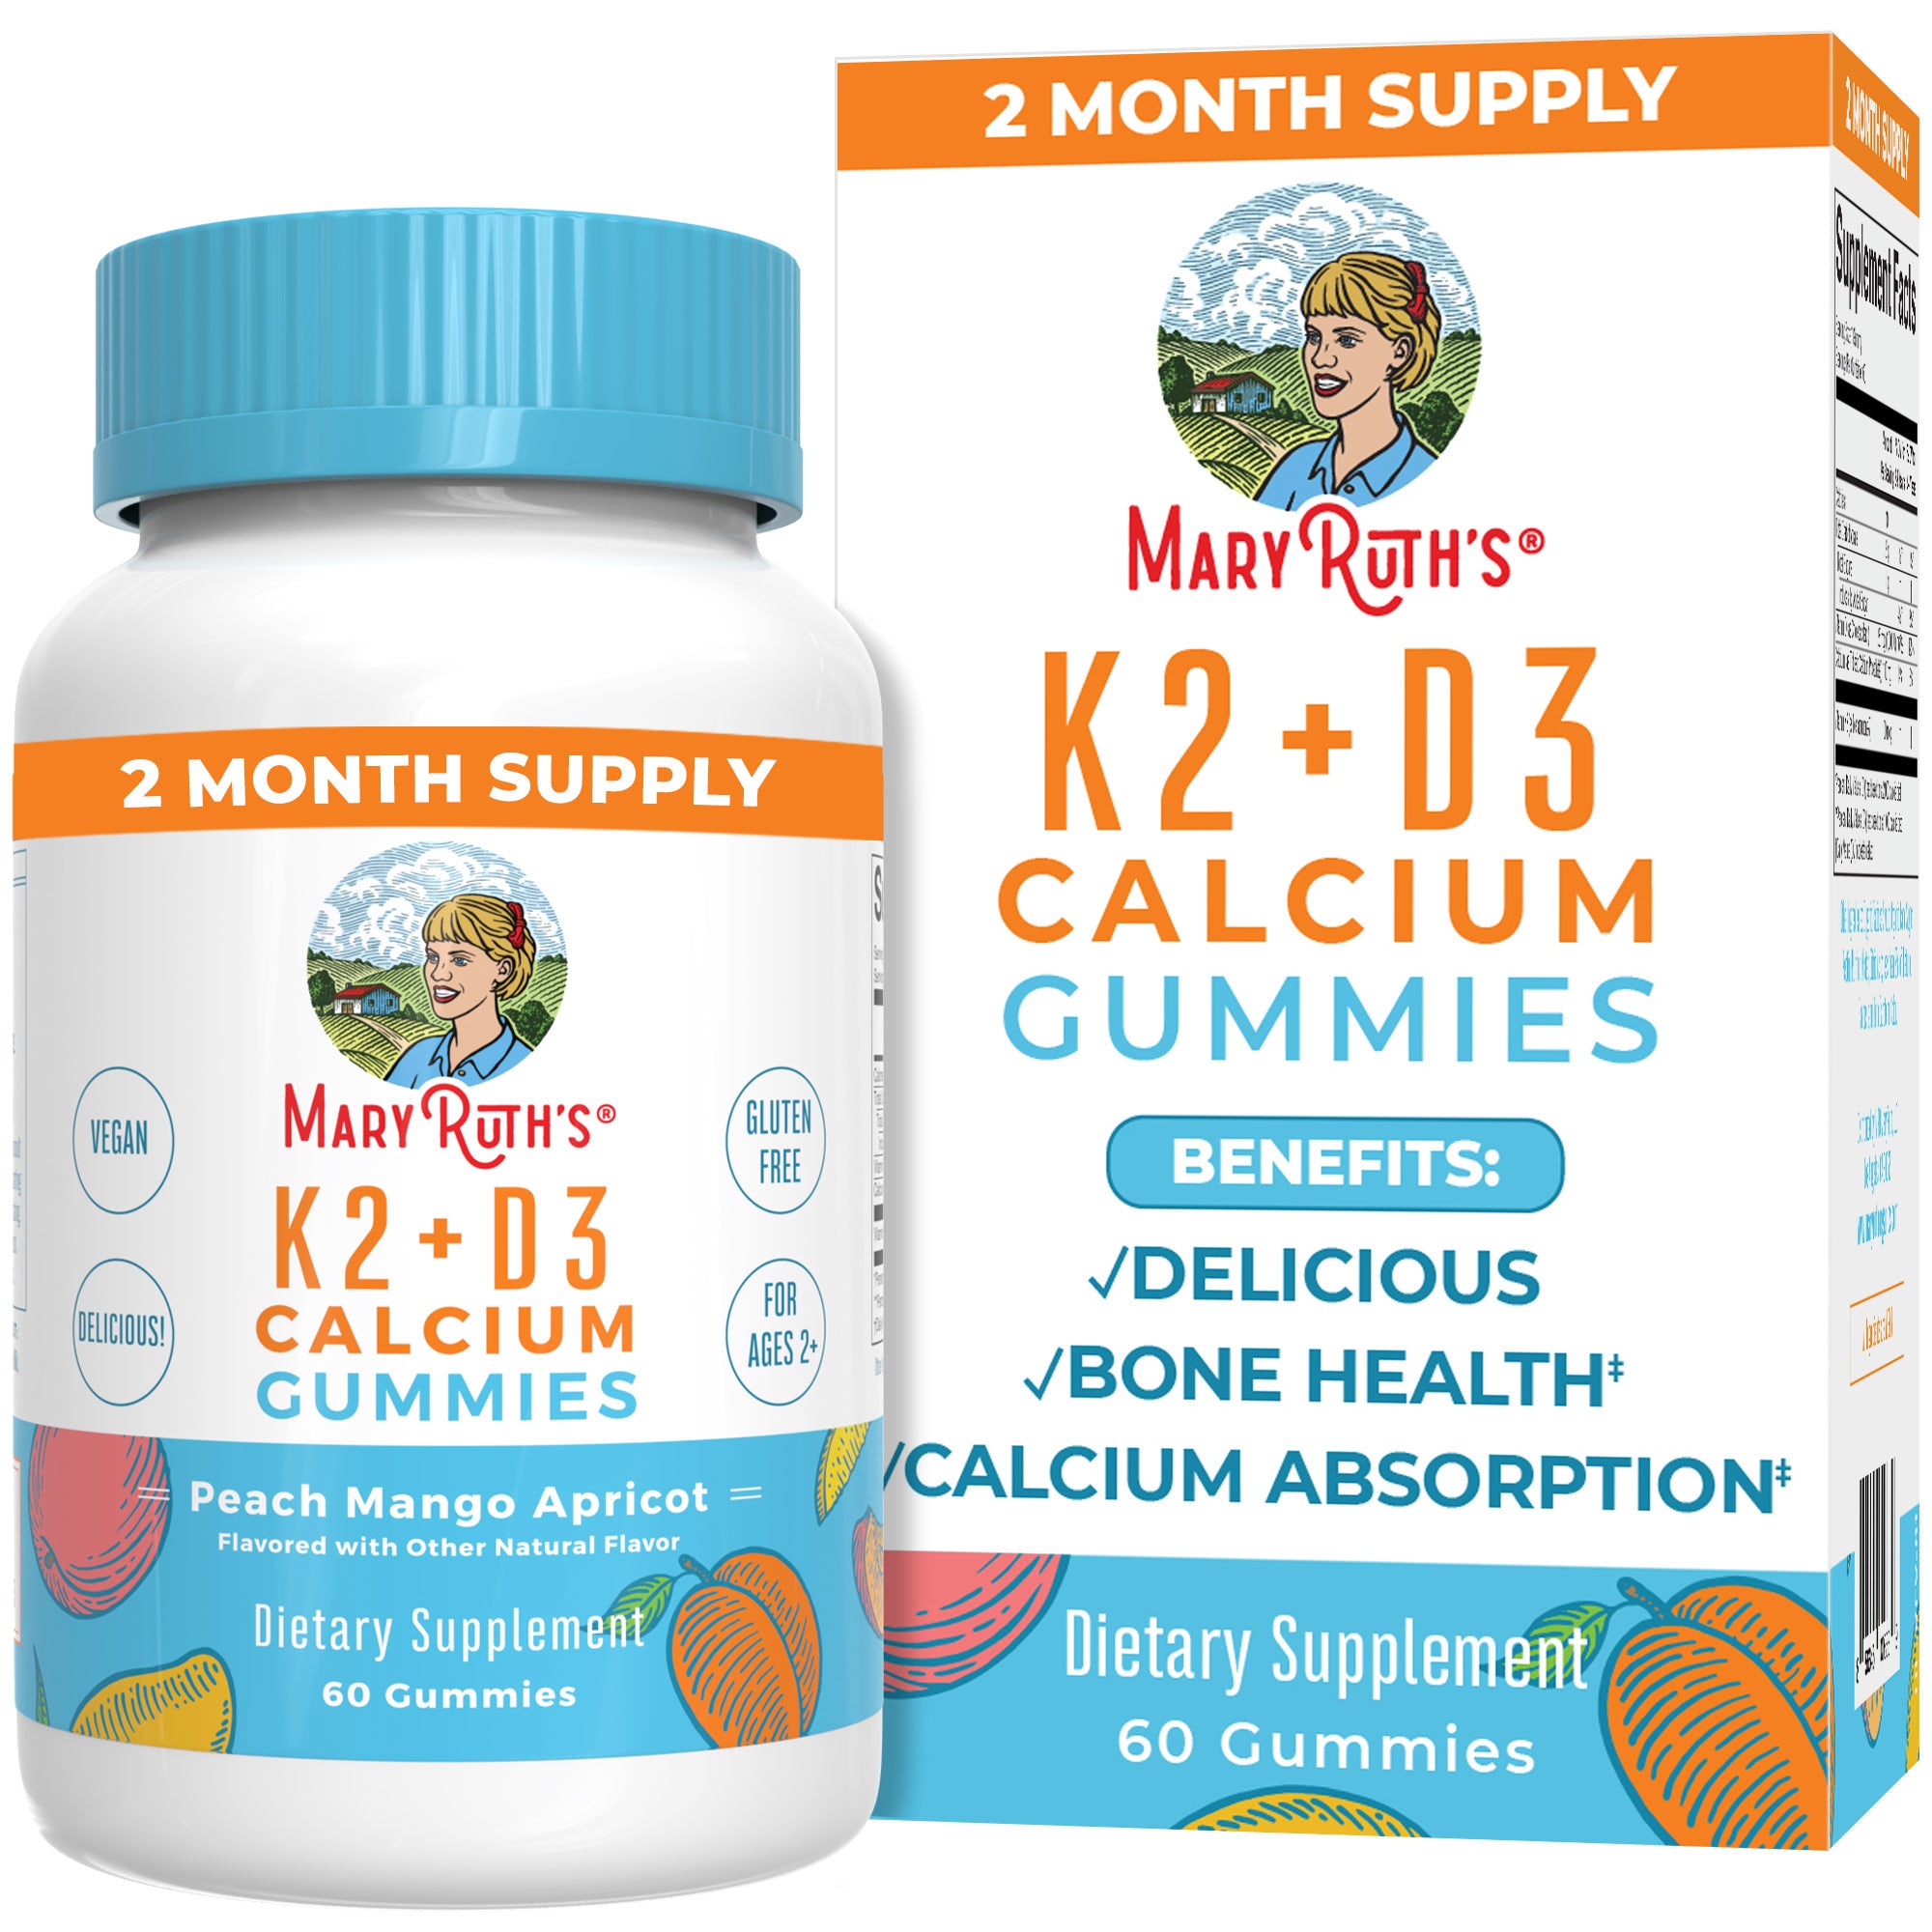 K2 + D3 Calcium Gummies